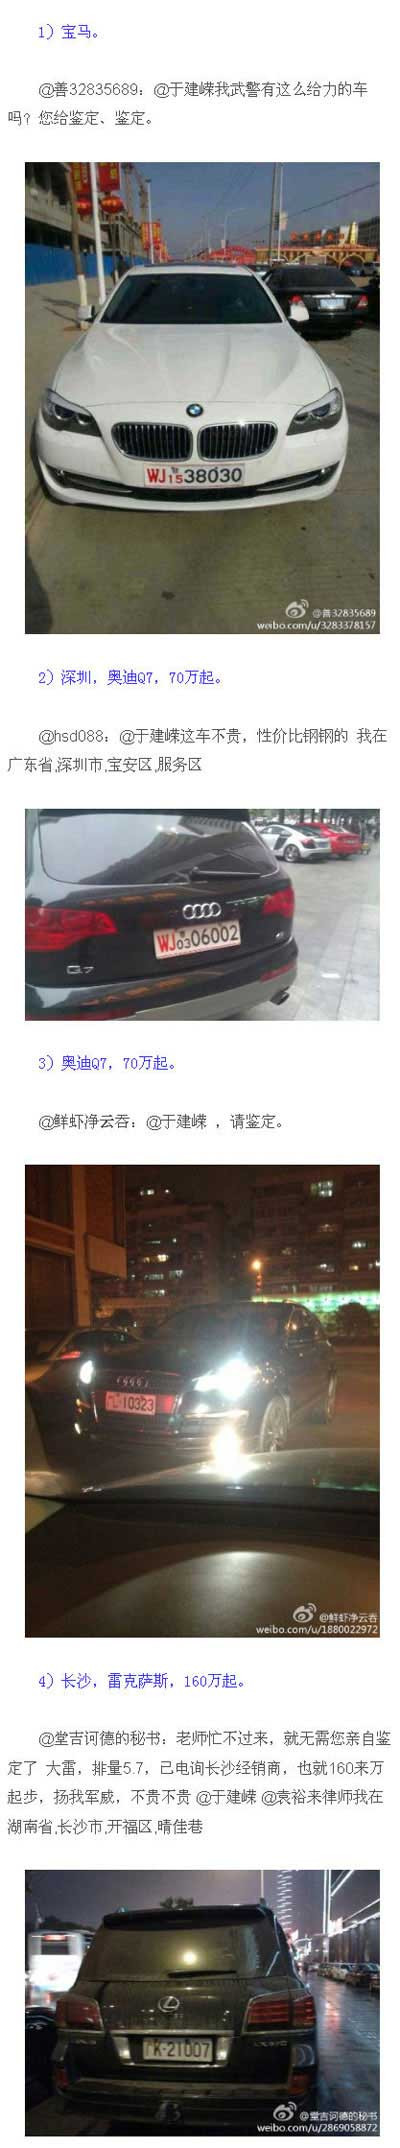 网民春节晒各地军牌豪车 包括玛莎拉蒂宝马X6(组图)